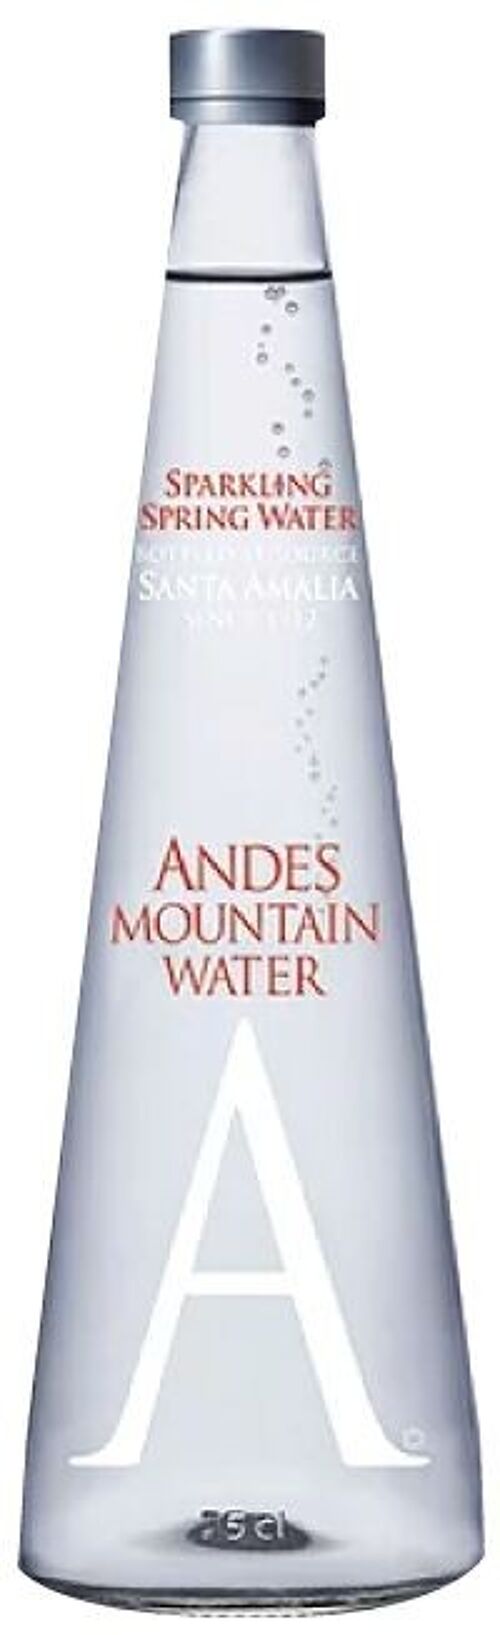 Andes Mountain water gaz (adjonction de gaz carbonique)